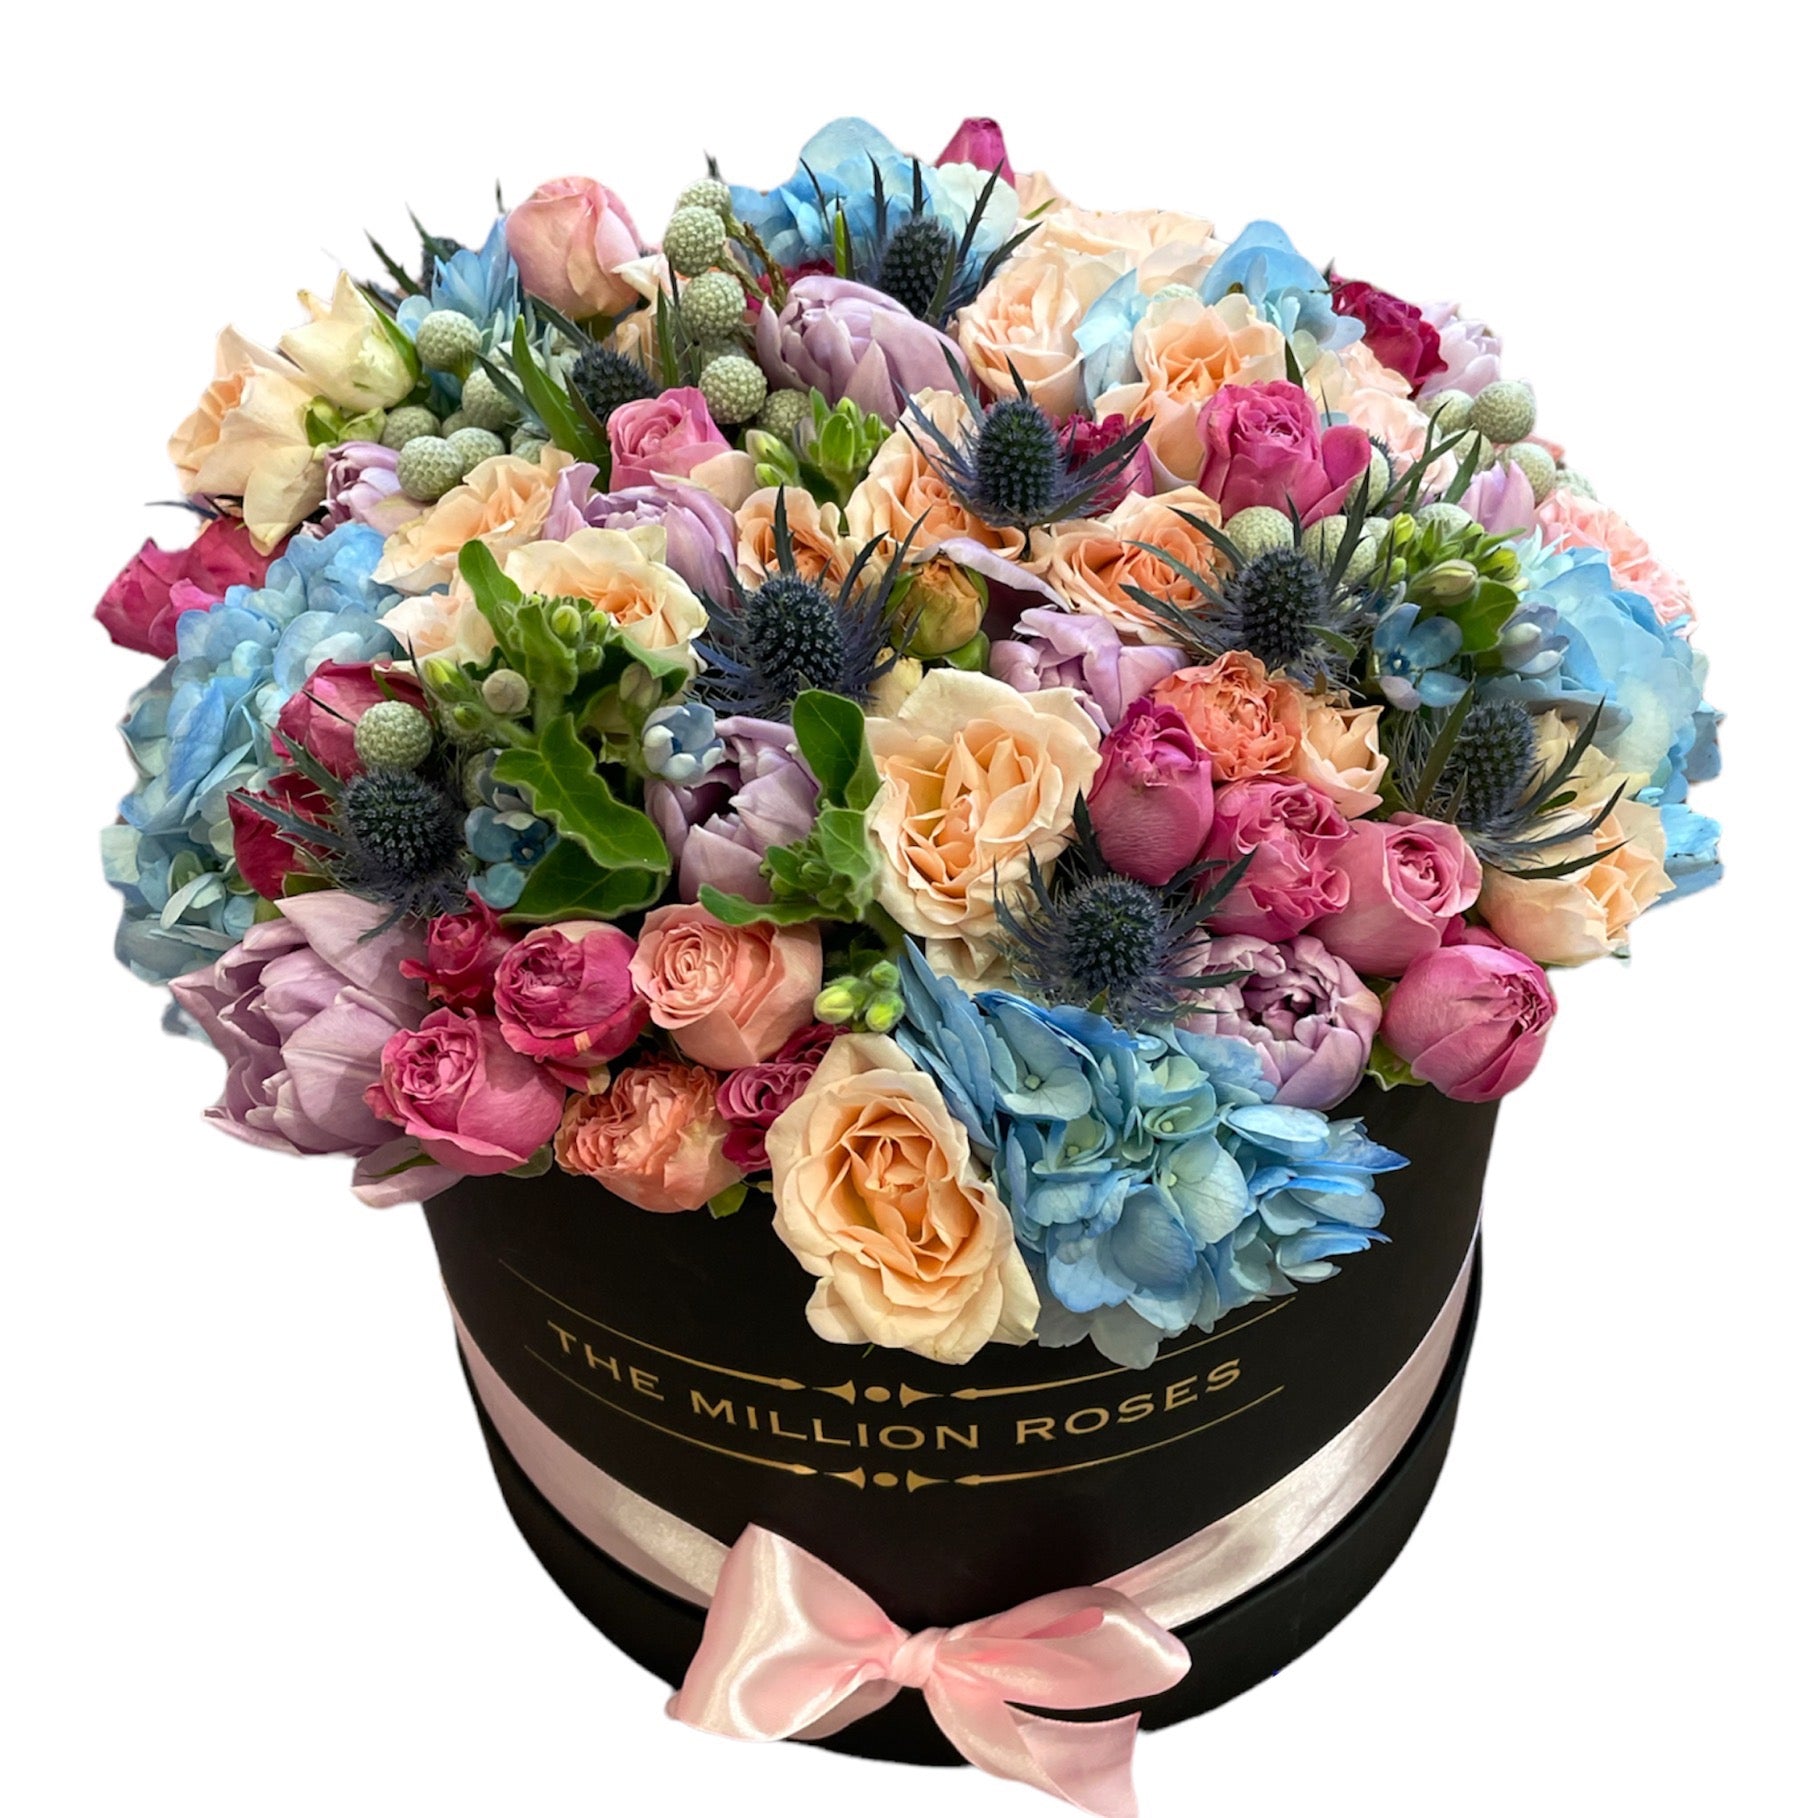 Aranjament cu flori mixte parfumate in cutie